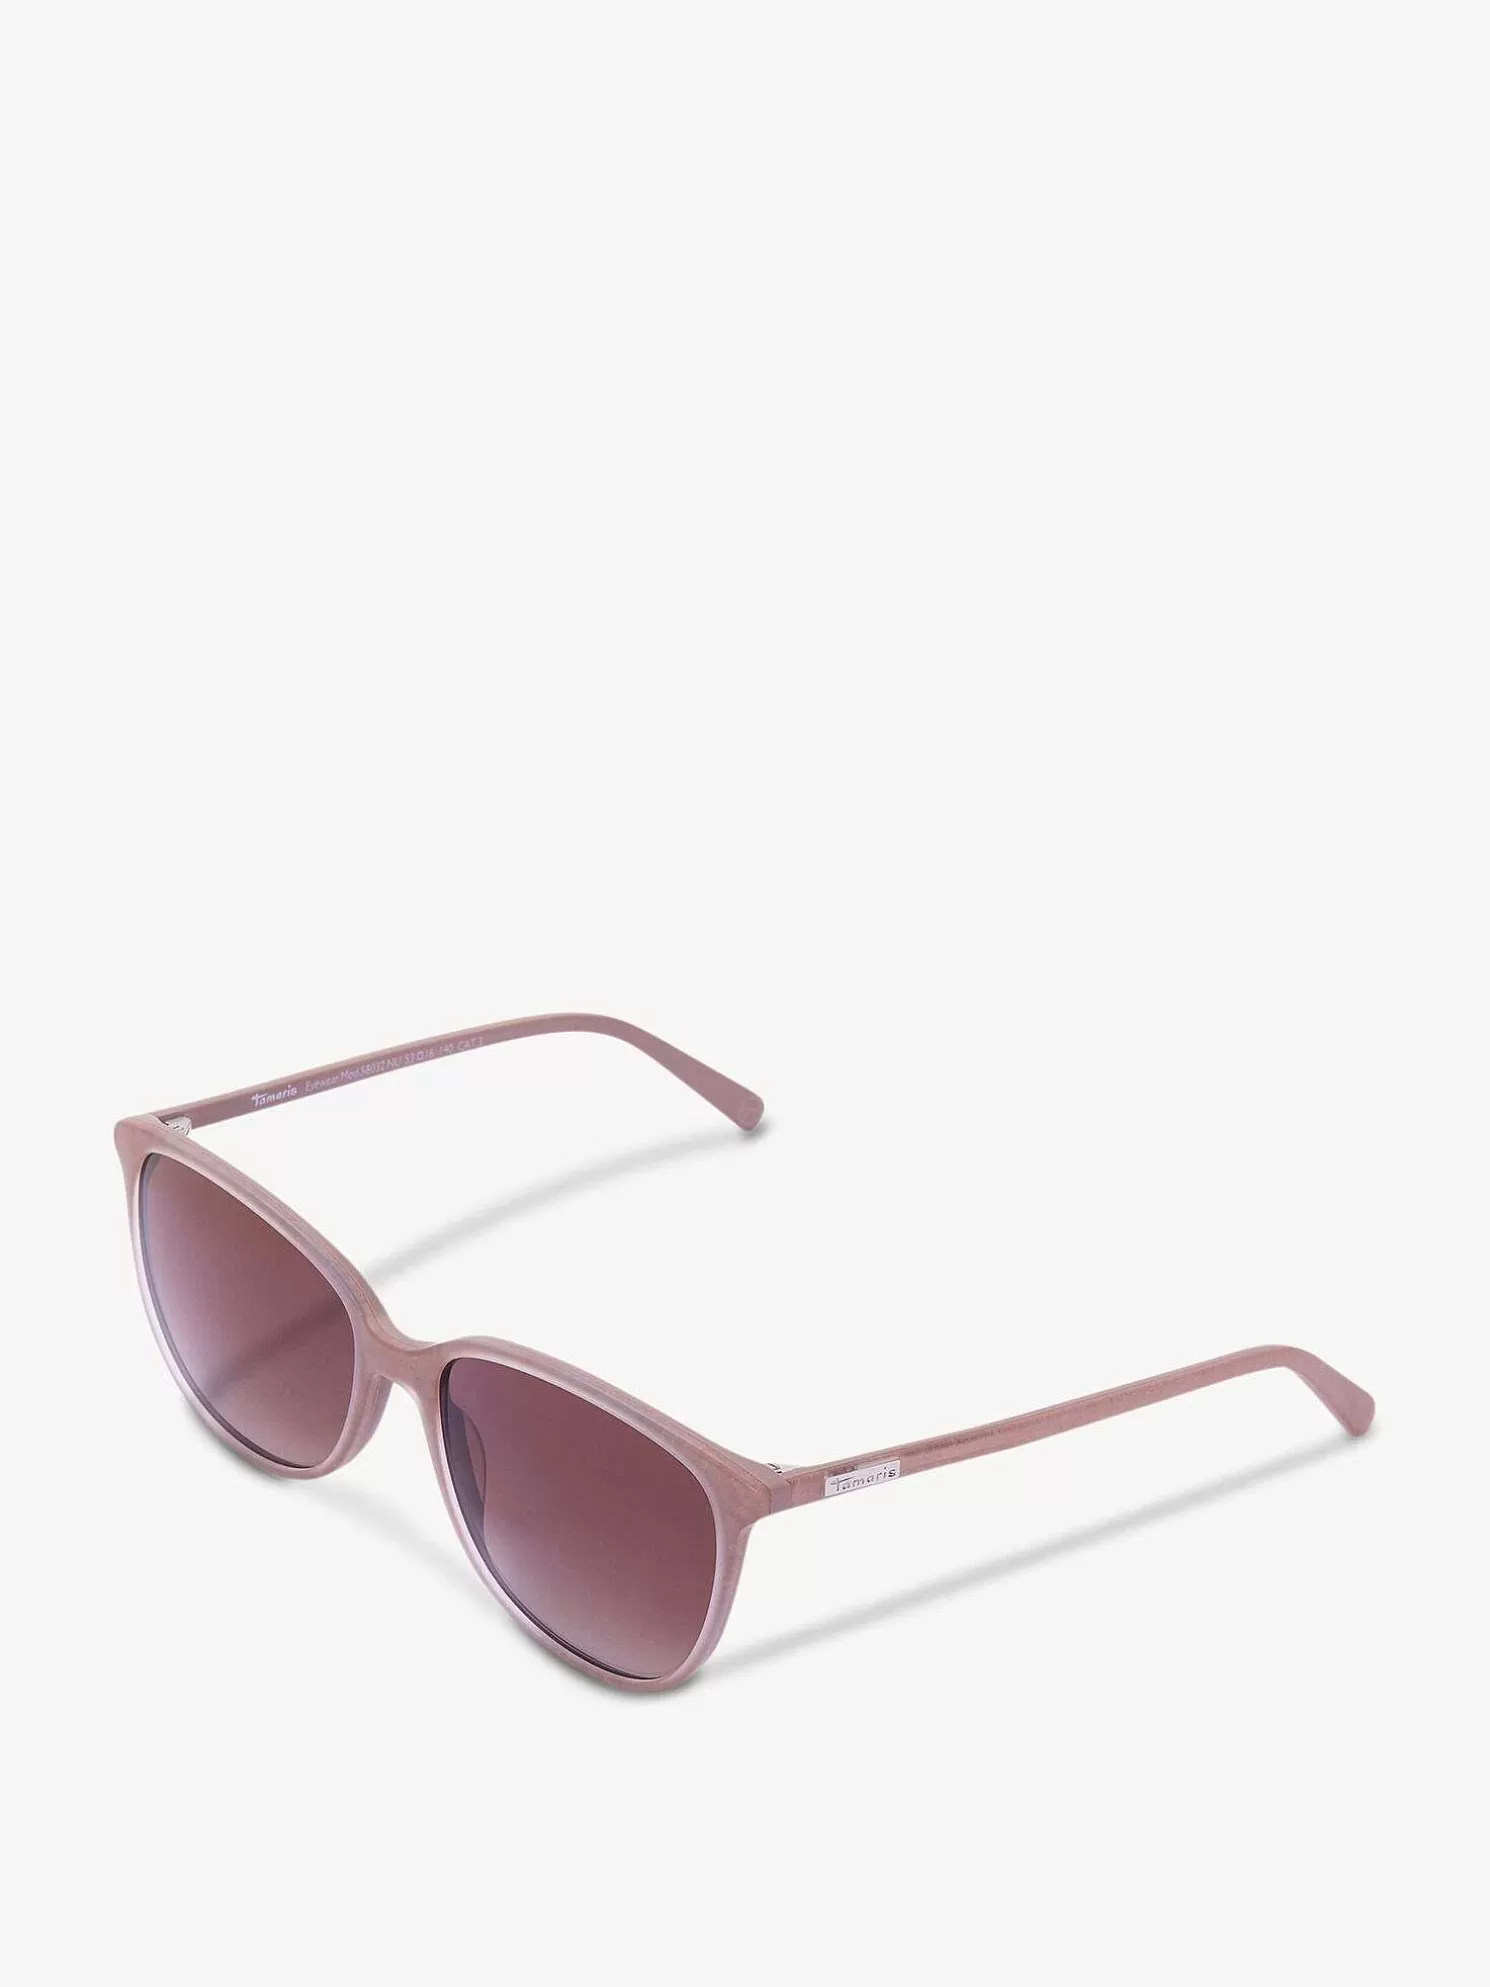 Sonnenbrille - Beige*Tamaris Shop